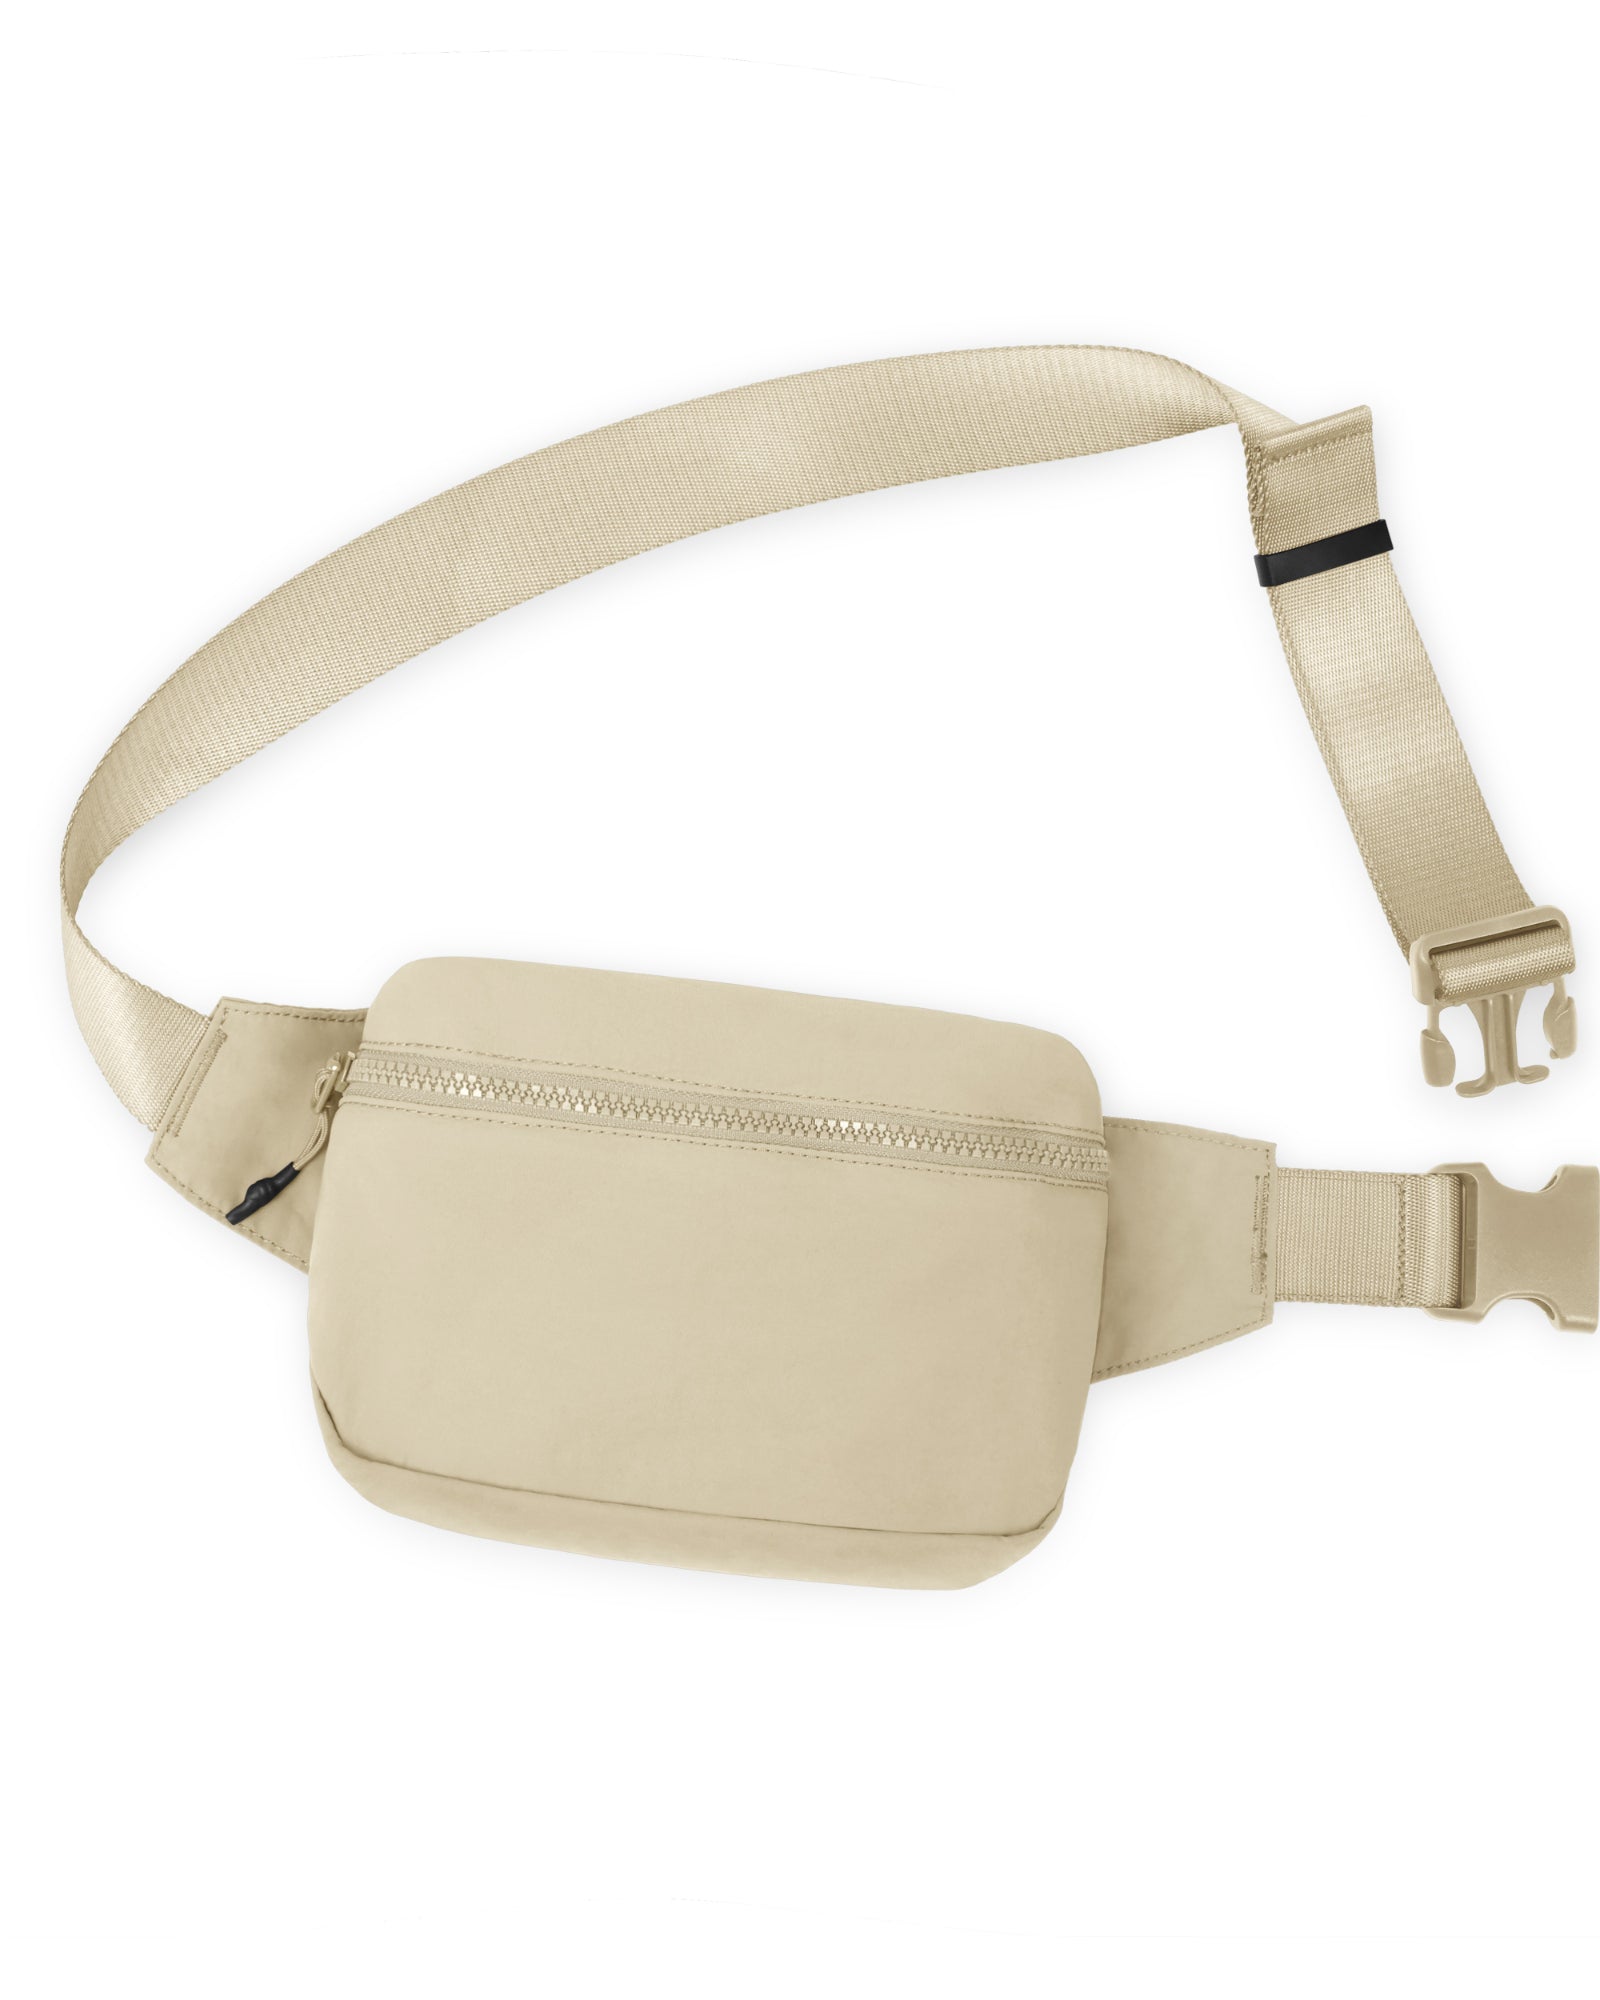 2L Belt Bag with Adjustable Strap Beige 8.5" x 5" x 2" - ododos